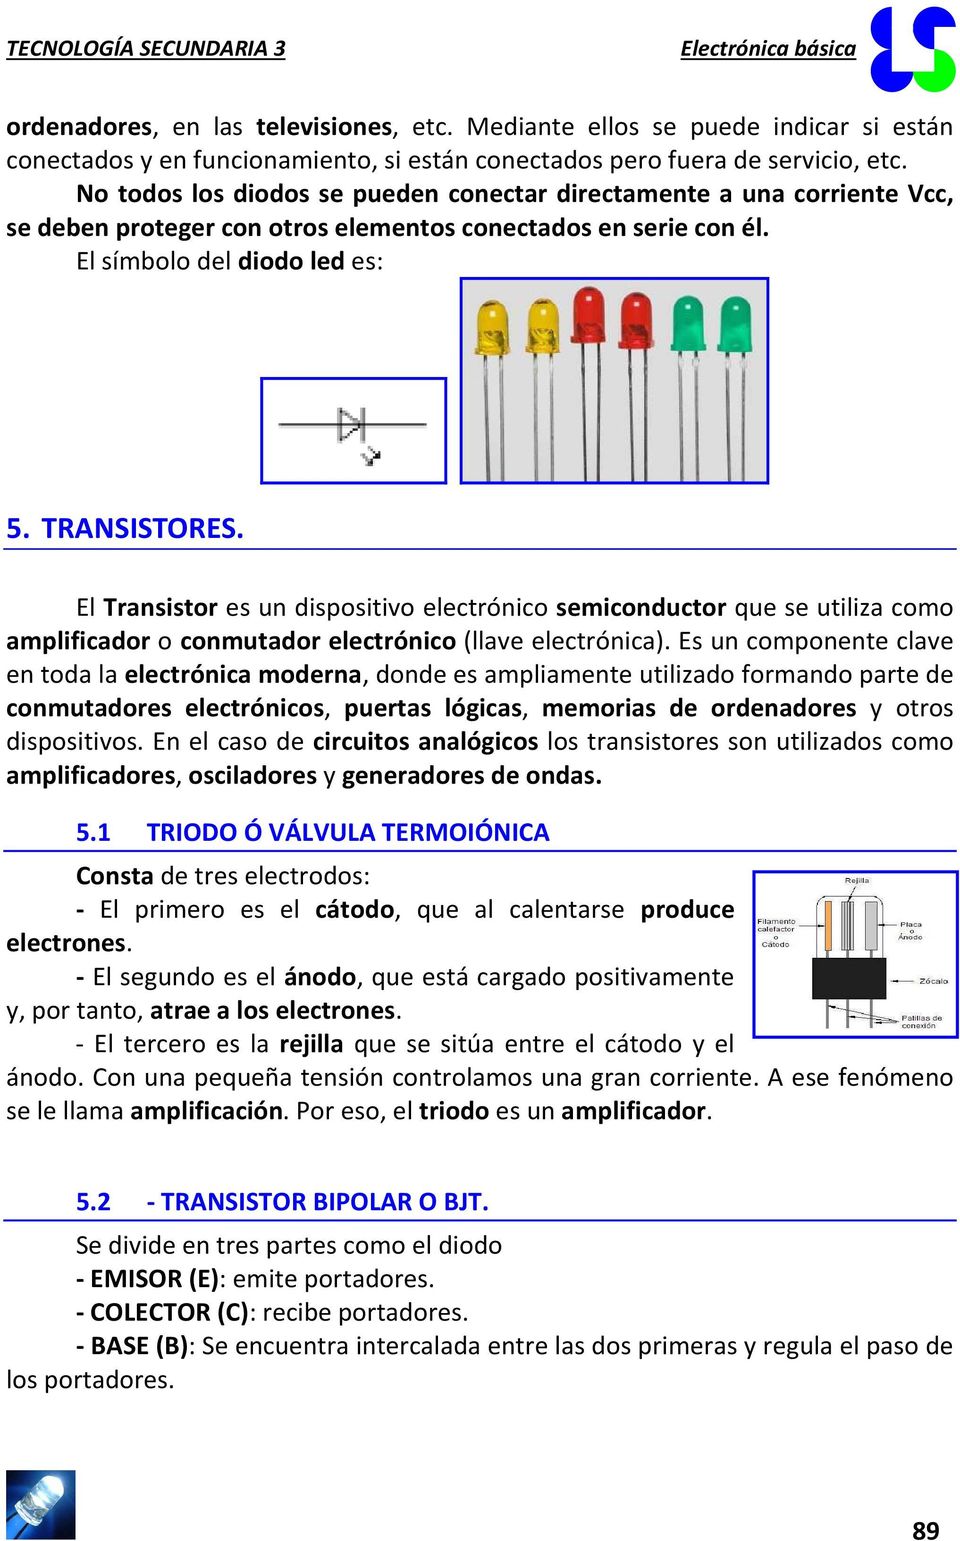 El Transistor es un dispositivo electrónico semiconductor que se utiliza como amplificador o conmutador electrónico (llave electrónica).